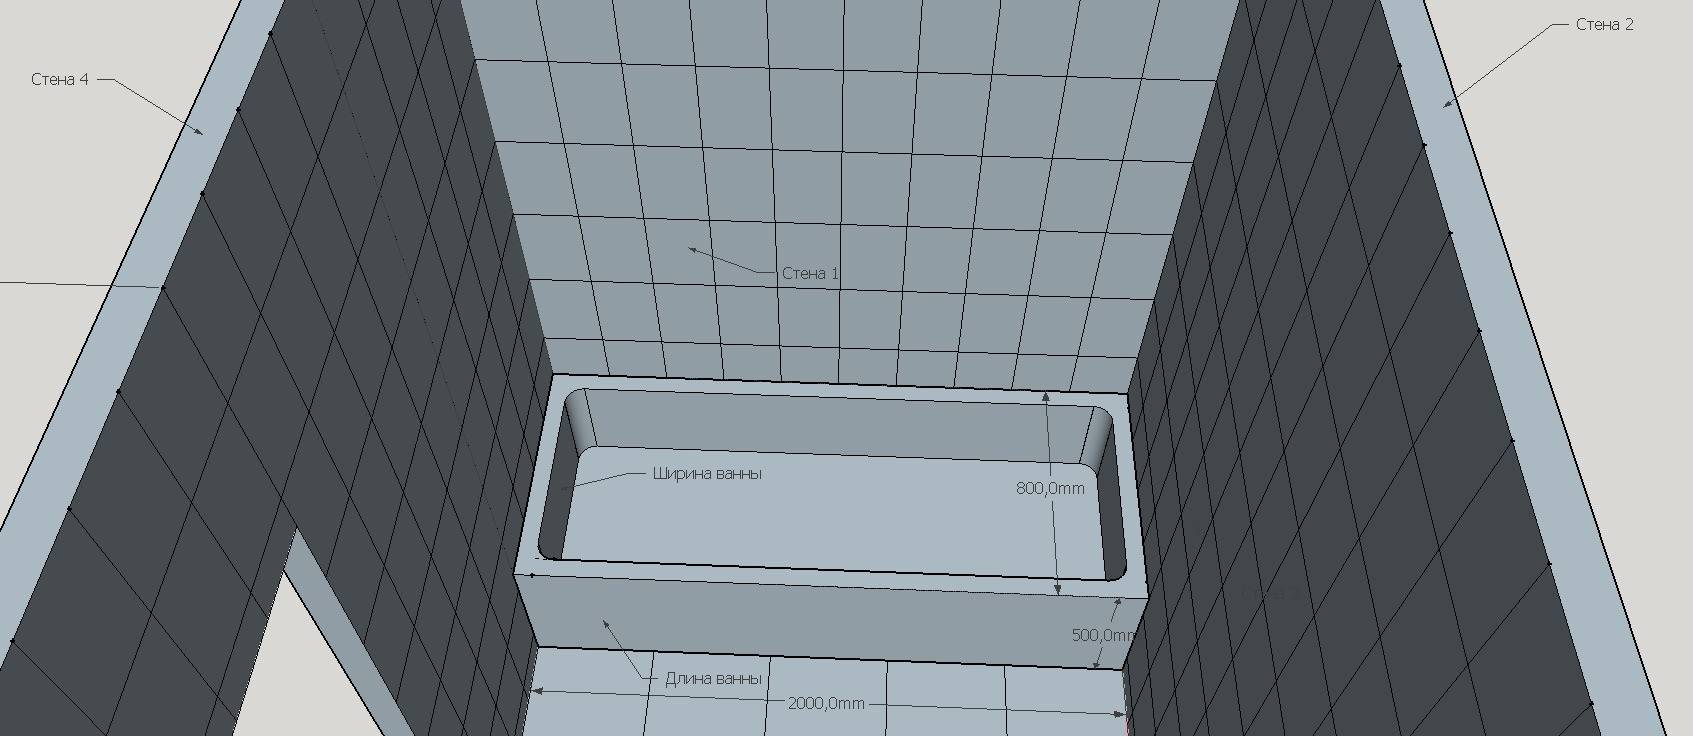 Размеры плитки керамической plitka vanny ru. Калькулятор плитки для ванной. Высота плитки в санузлах. Плитка в ванную комнату толщина. Подсчет плитки в ванной.